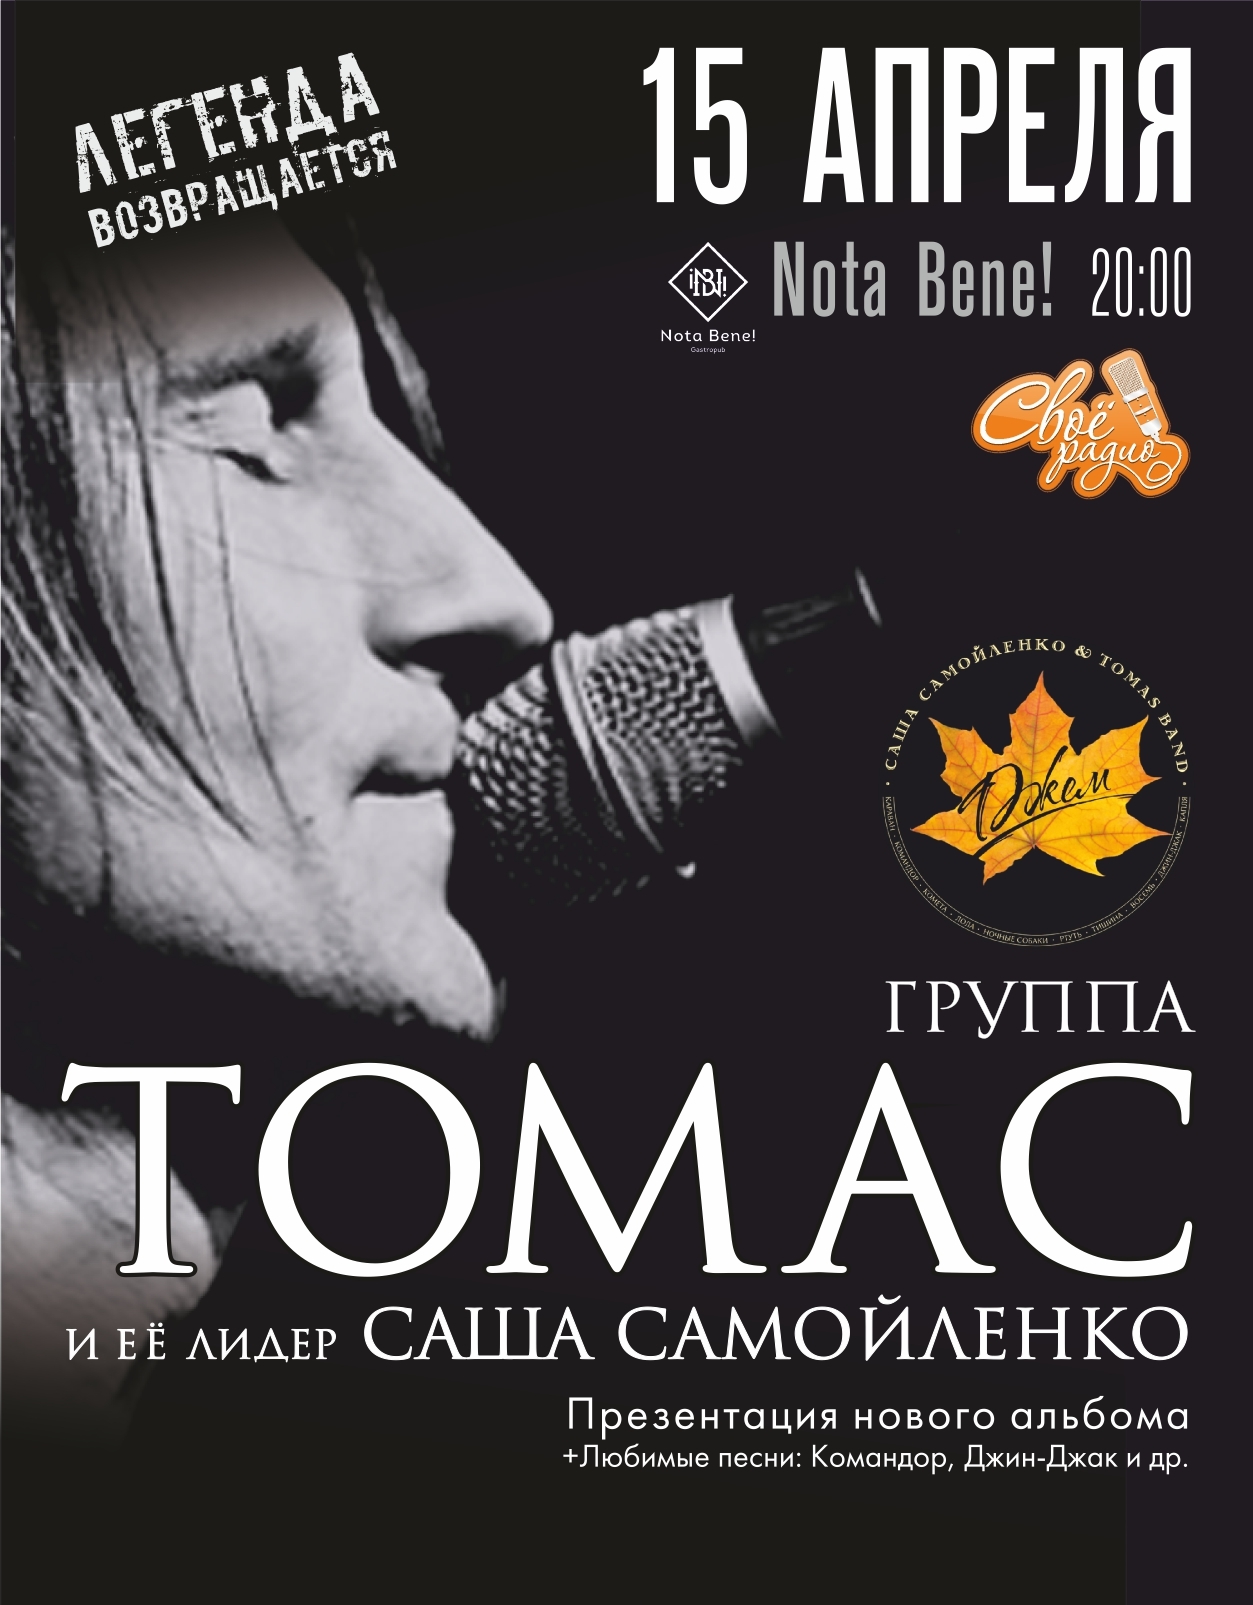 Впервые в Екатеринбурге пройдет сольный концерт Саша Самойленко & TOMAS band - Фото 3